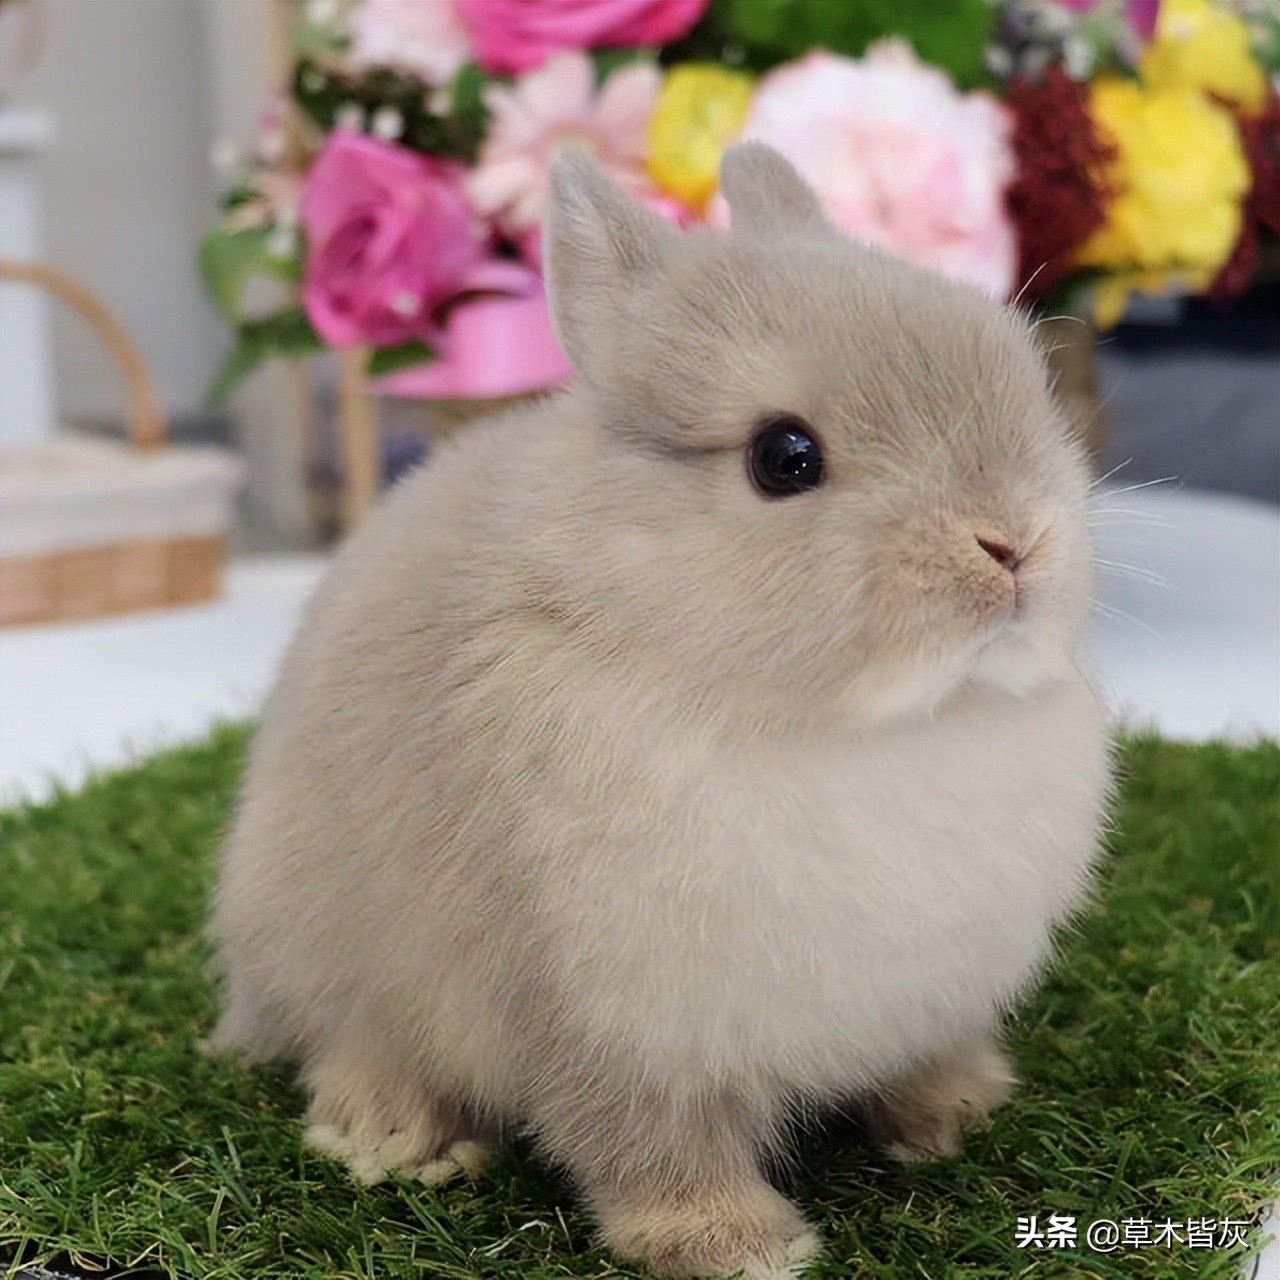 世界上最小的宠物兔侏儒兔 你见过吗